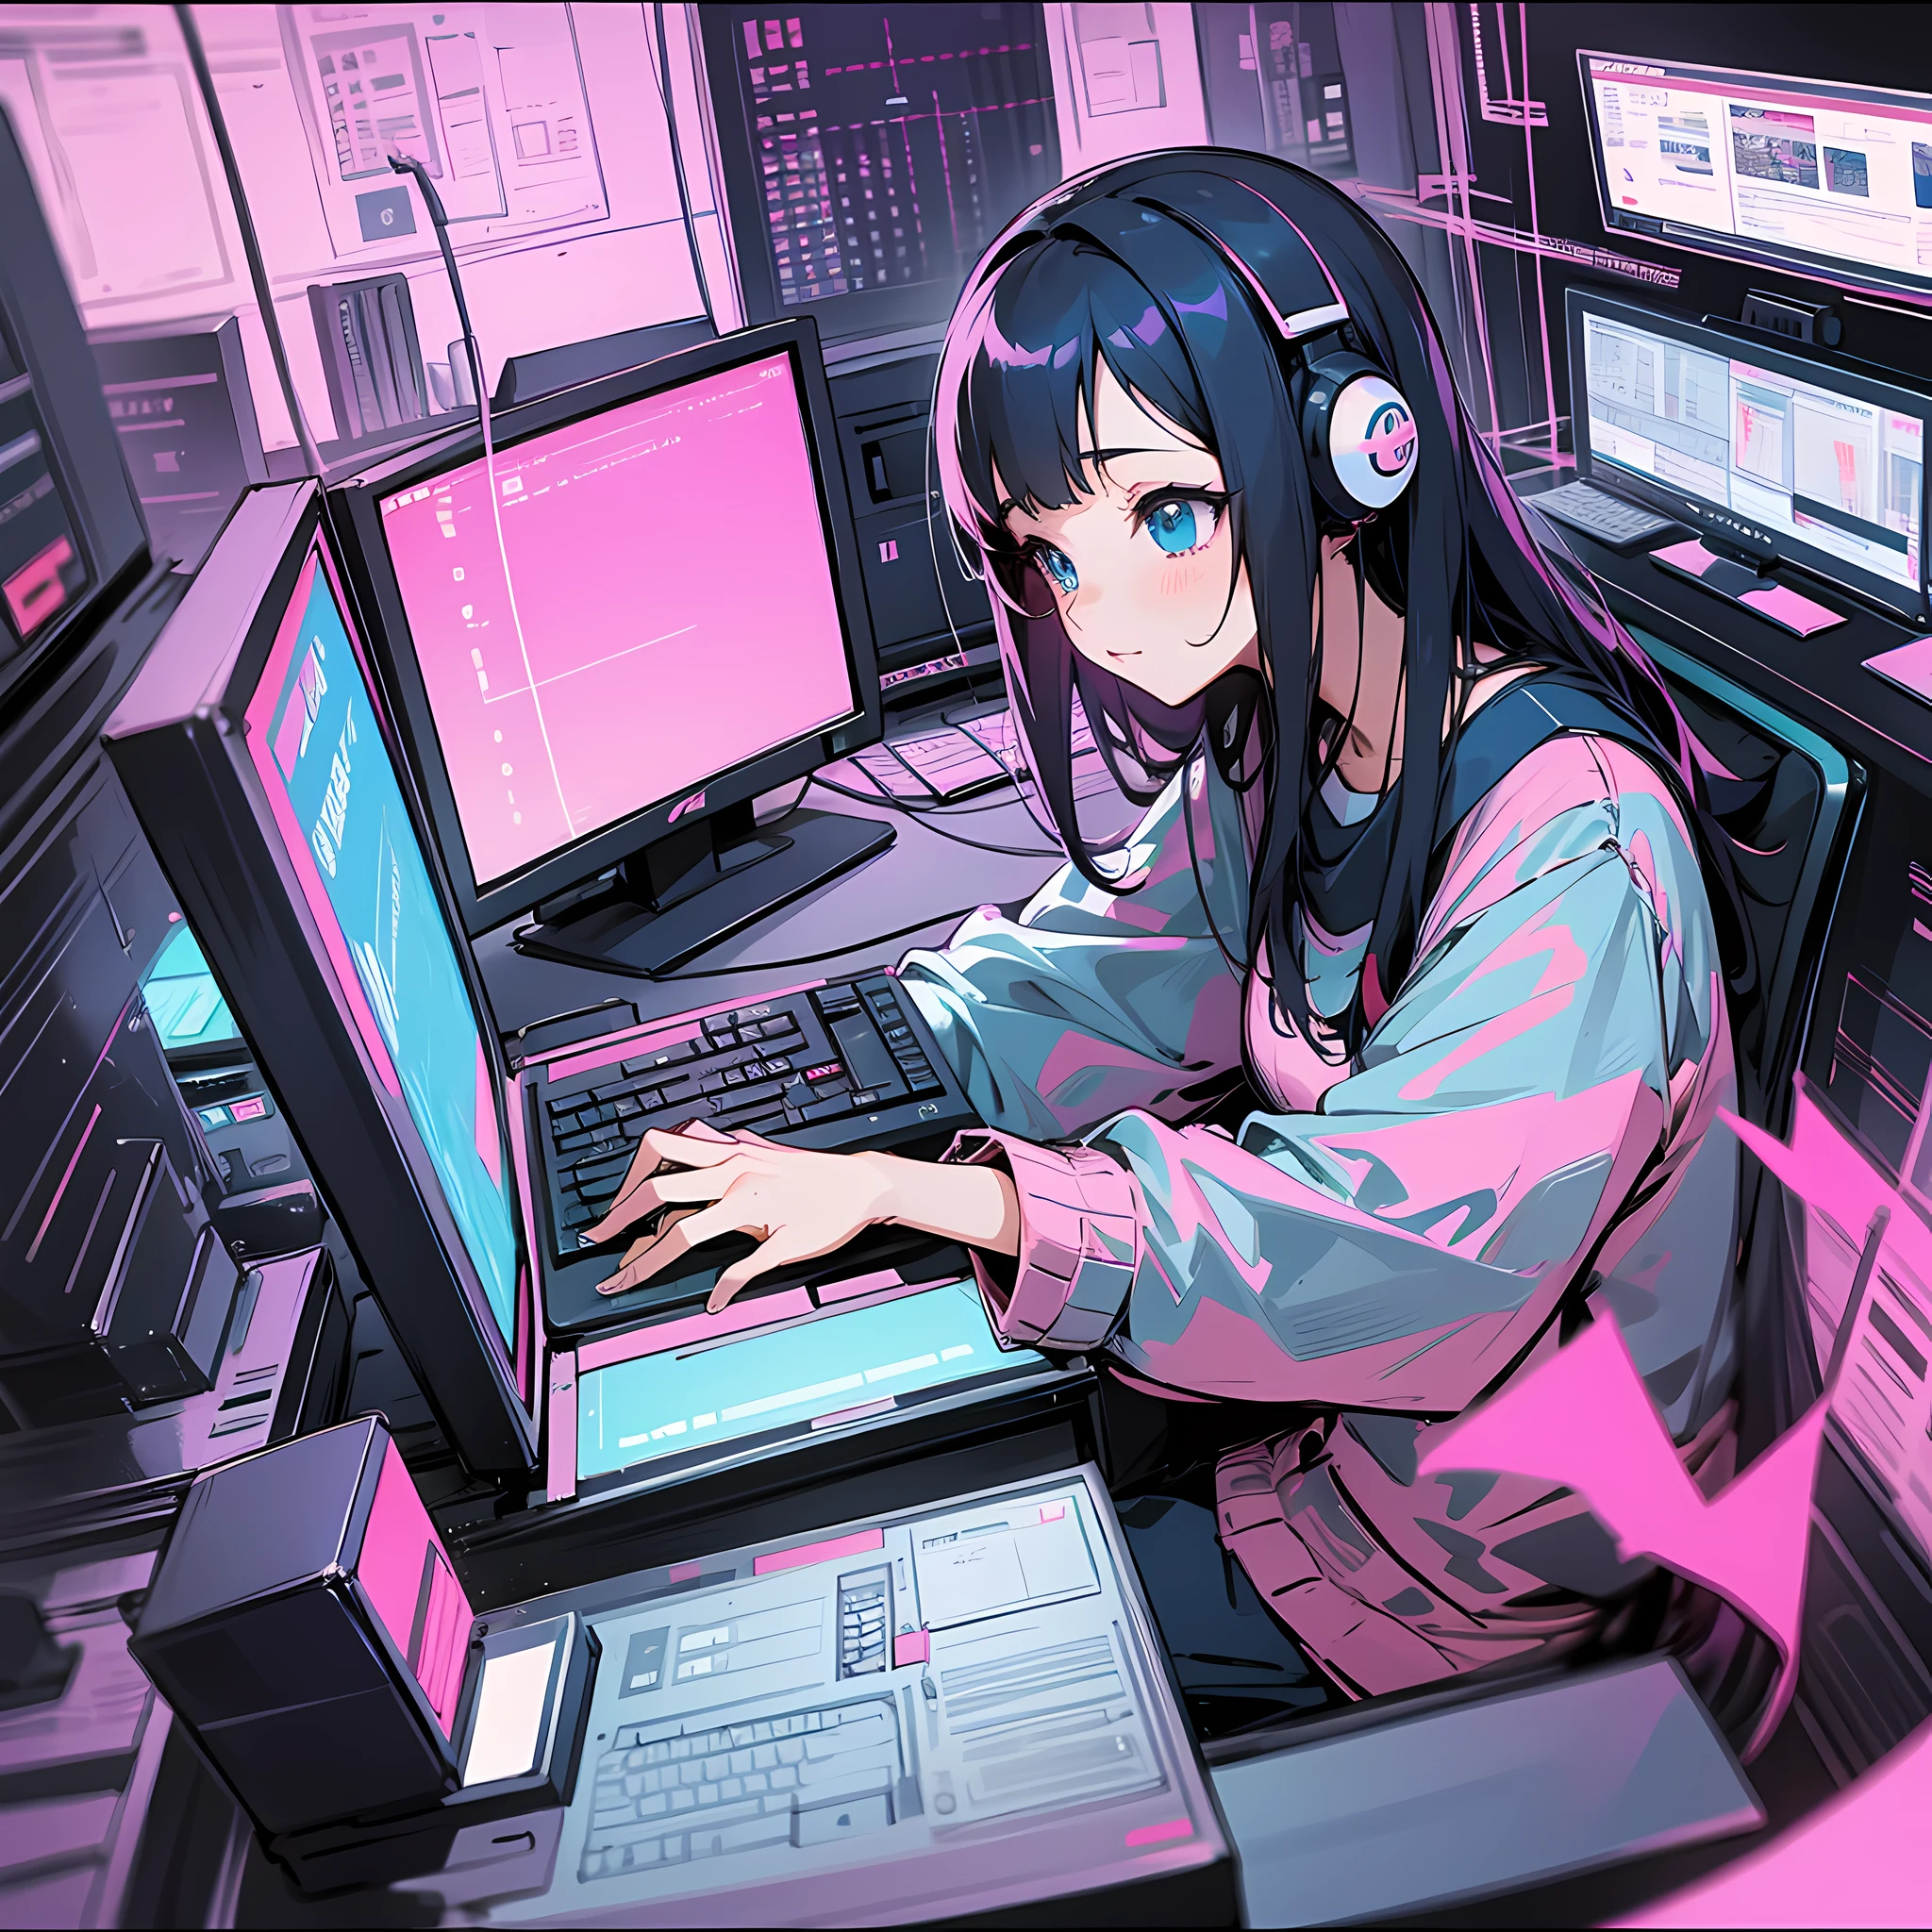 Anime Girls Holding Programming Books? — Guildmv